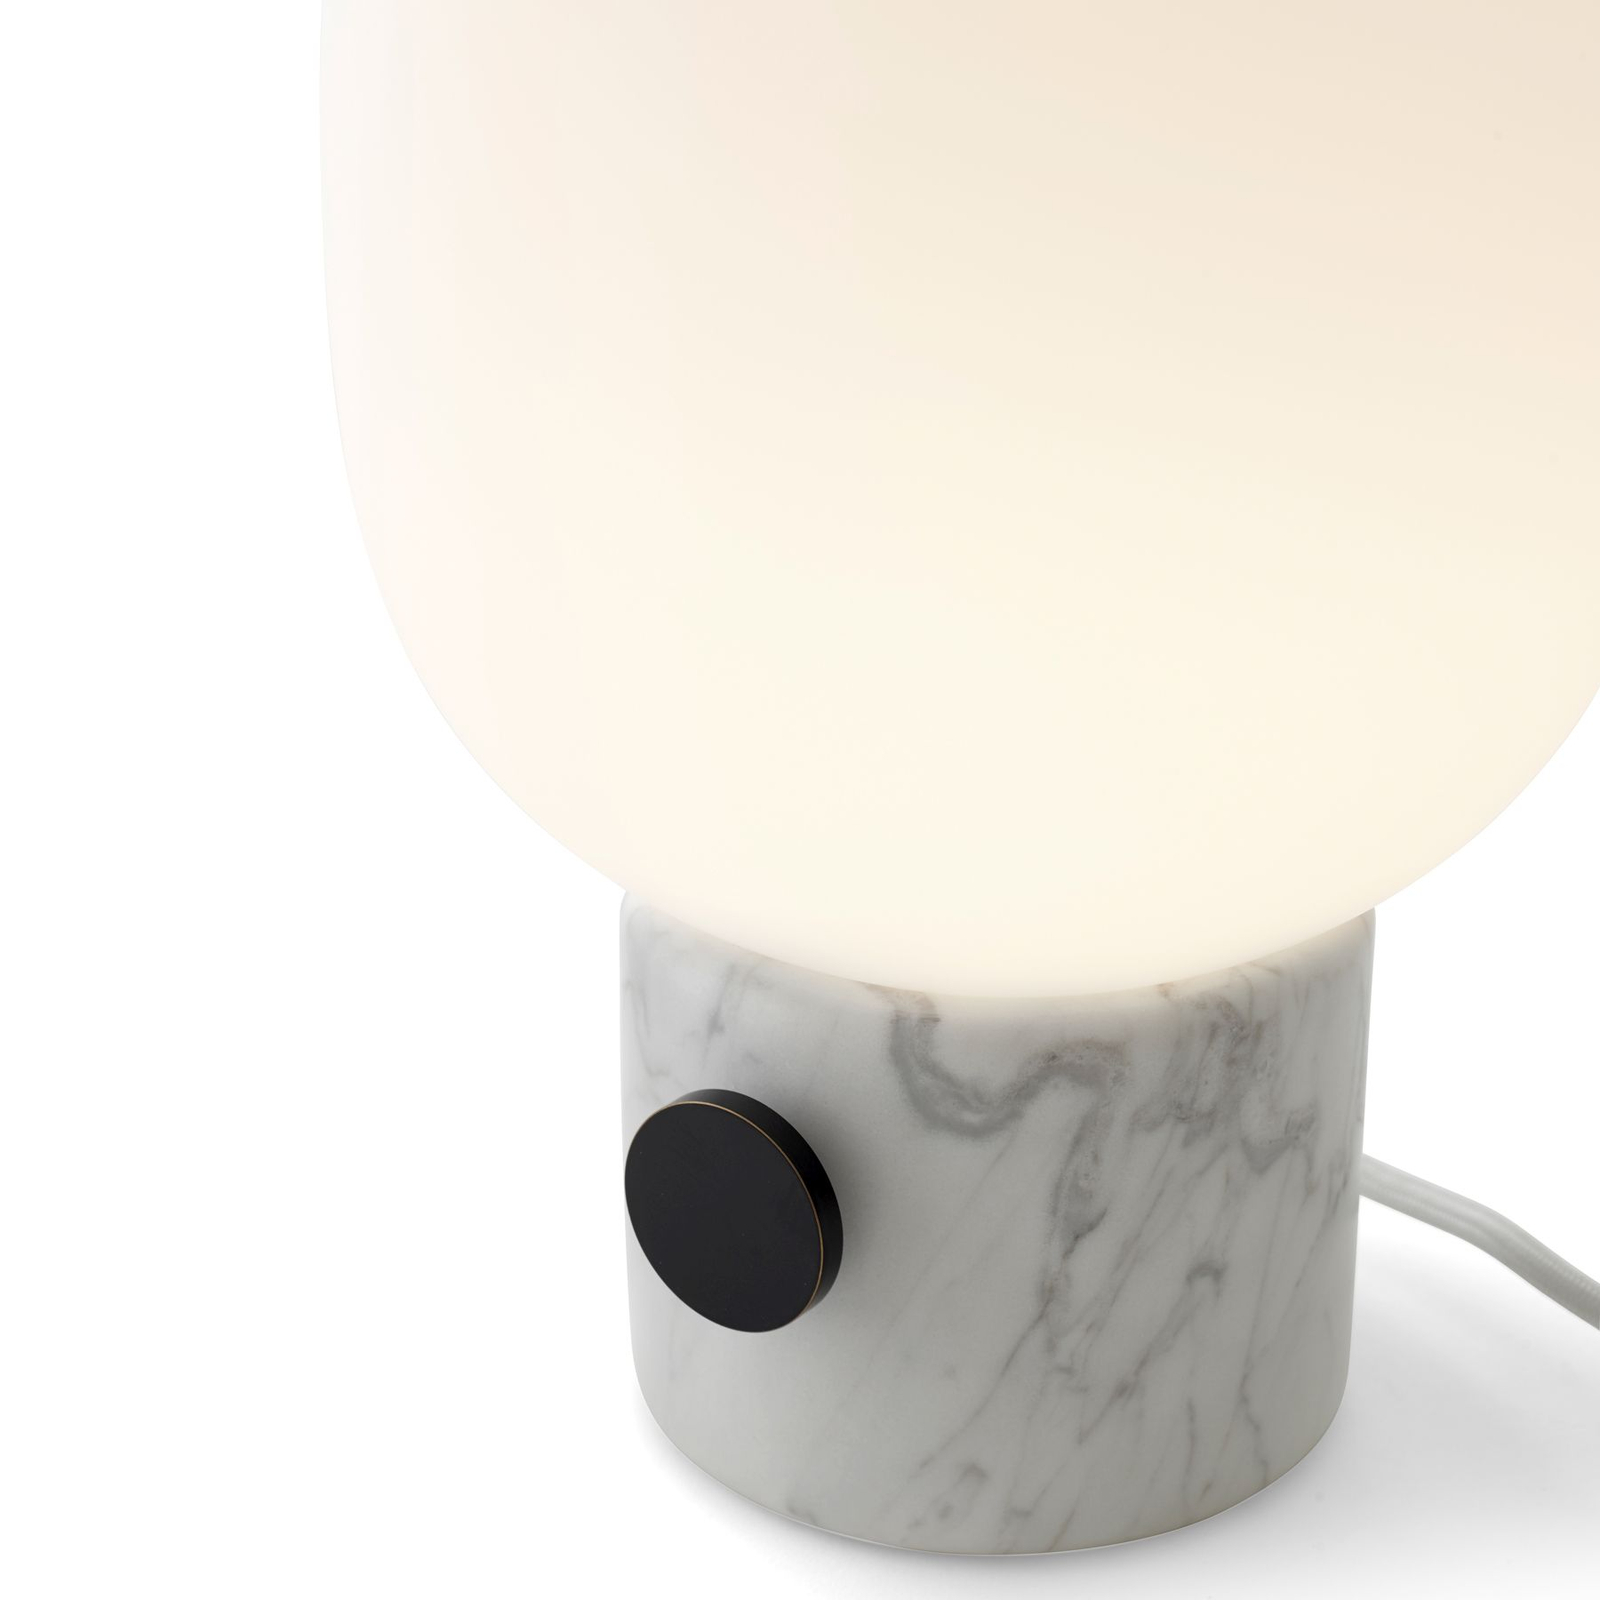 Audo JWDA stolová lampa z mramoru Carrara